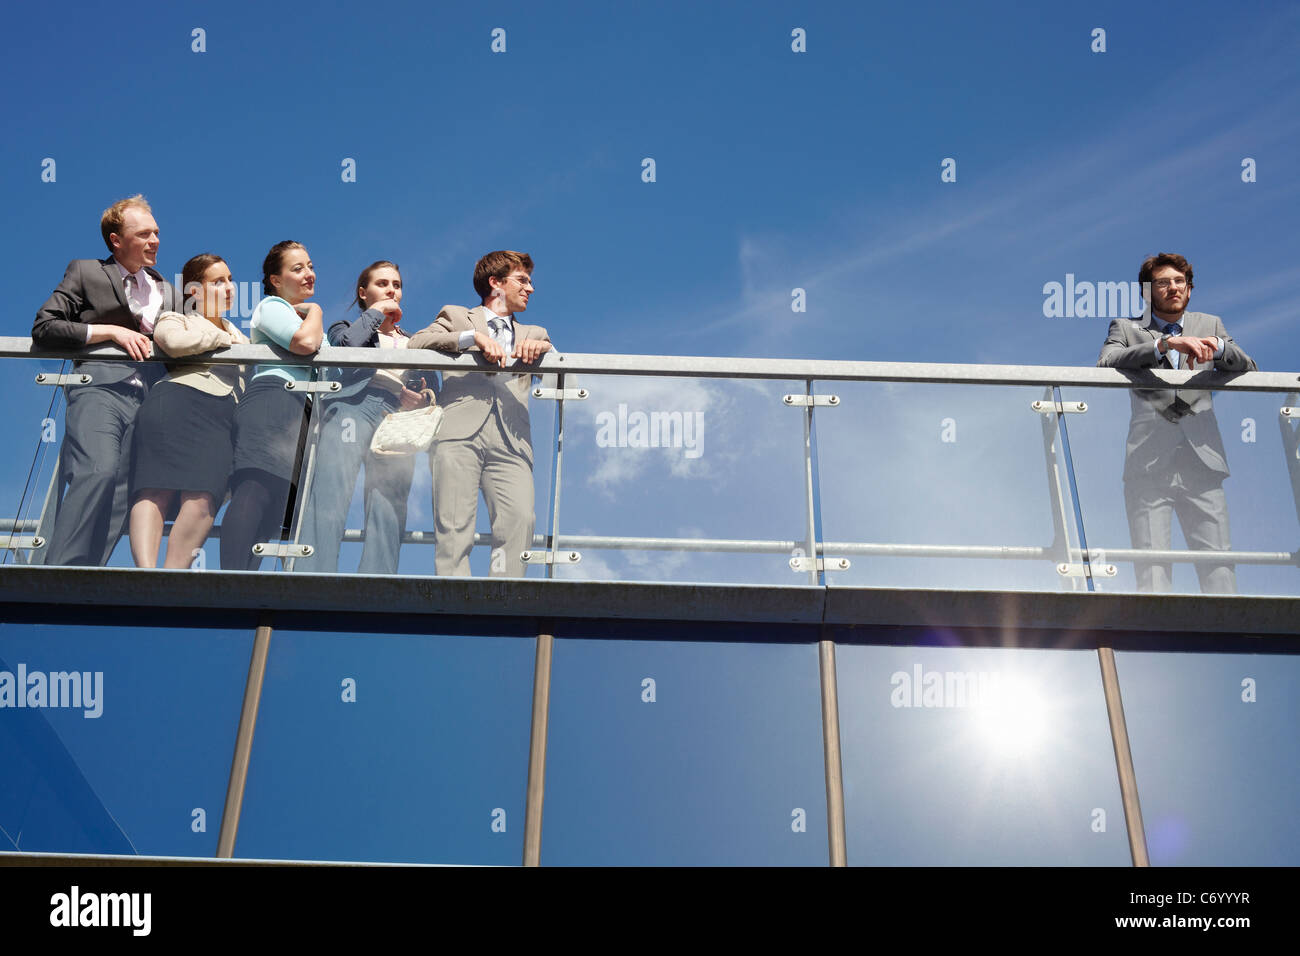 Business people standing on walkway Stock Photo